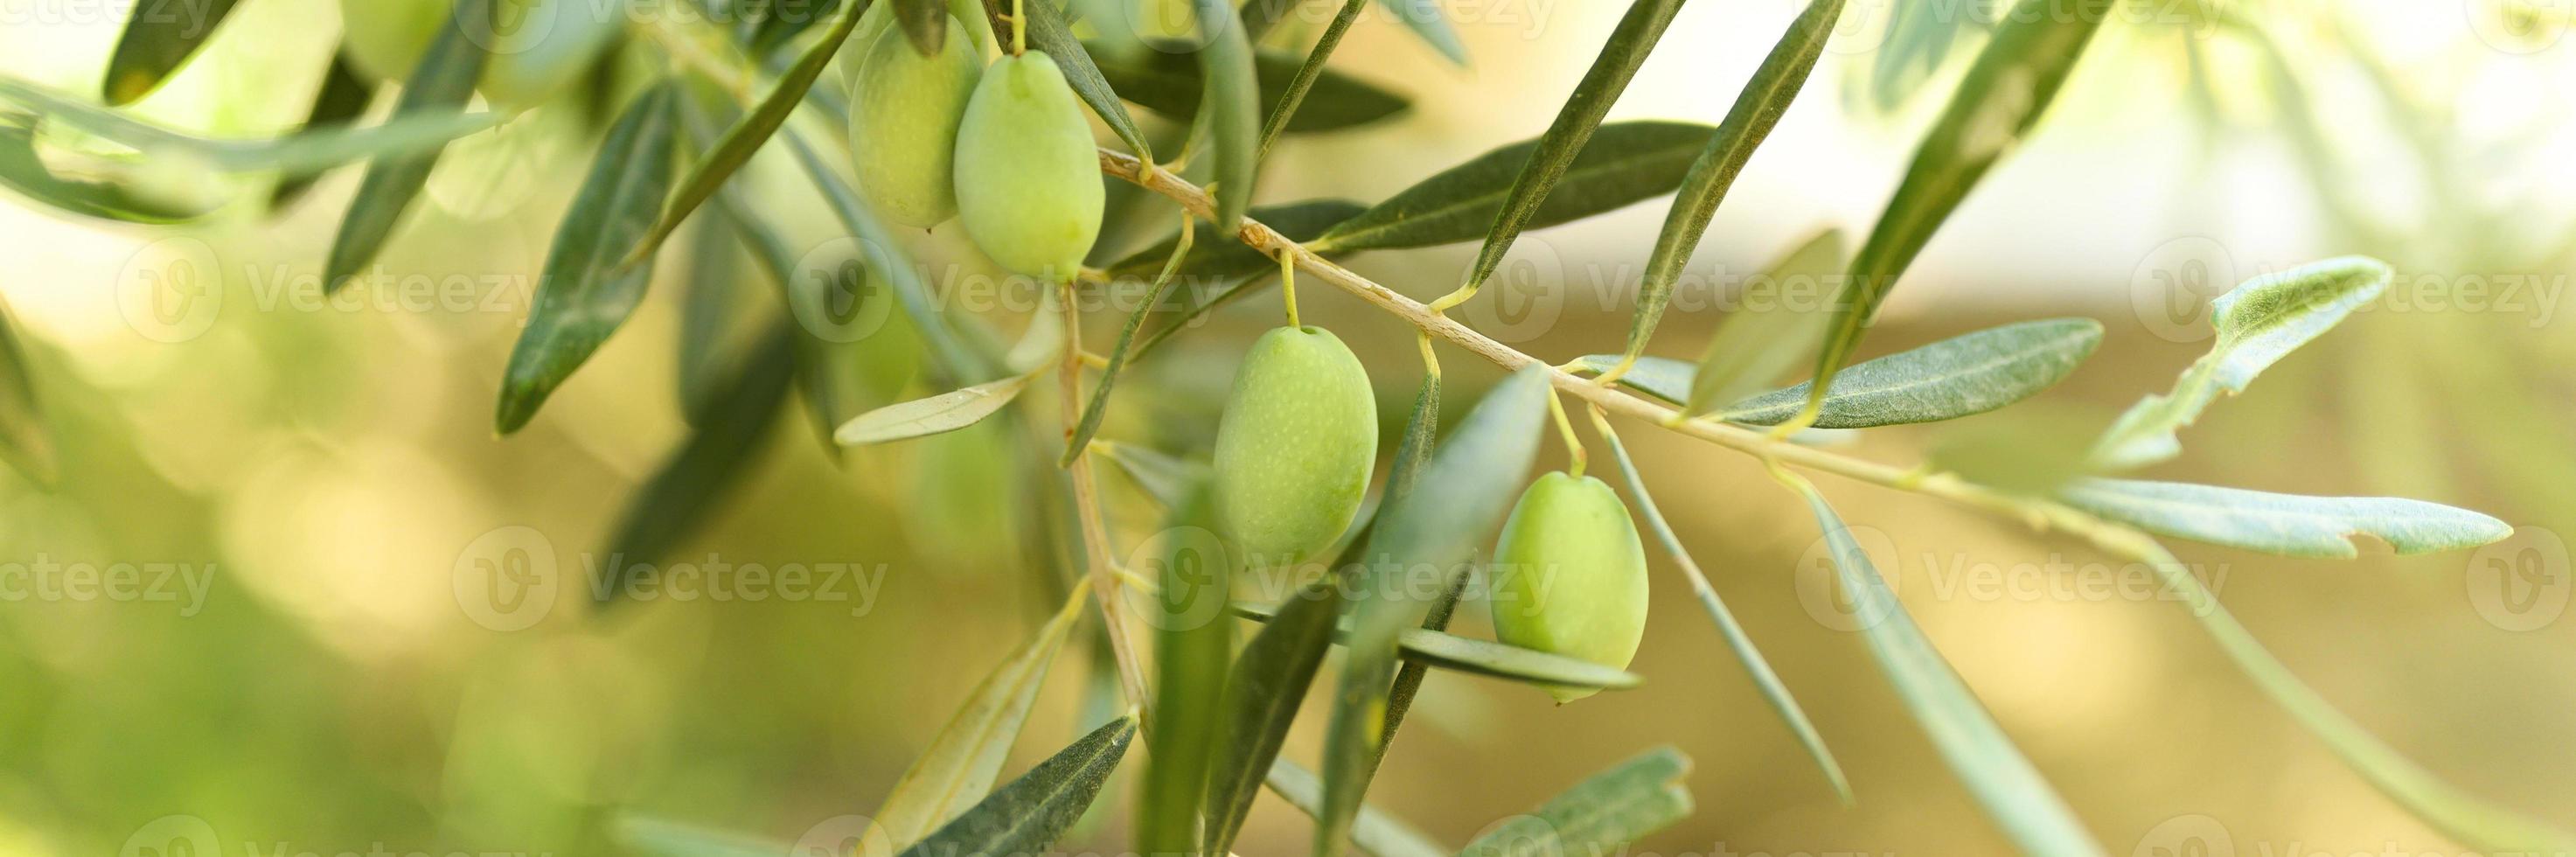 gröna oliver som växer på en olivträdgren i trädgården foto